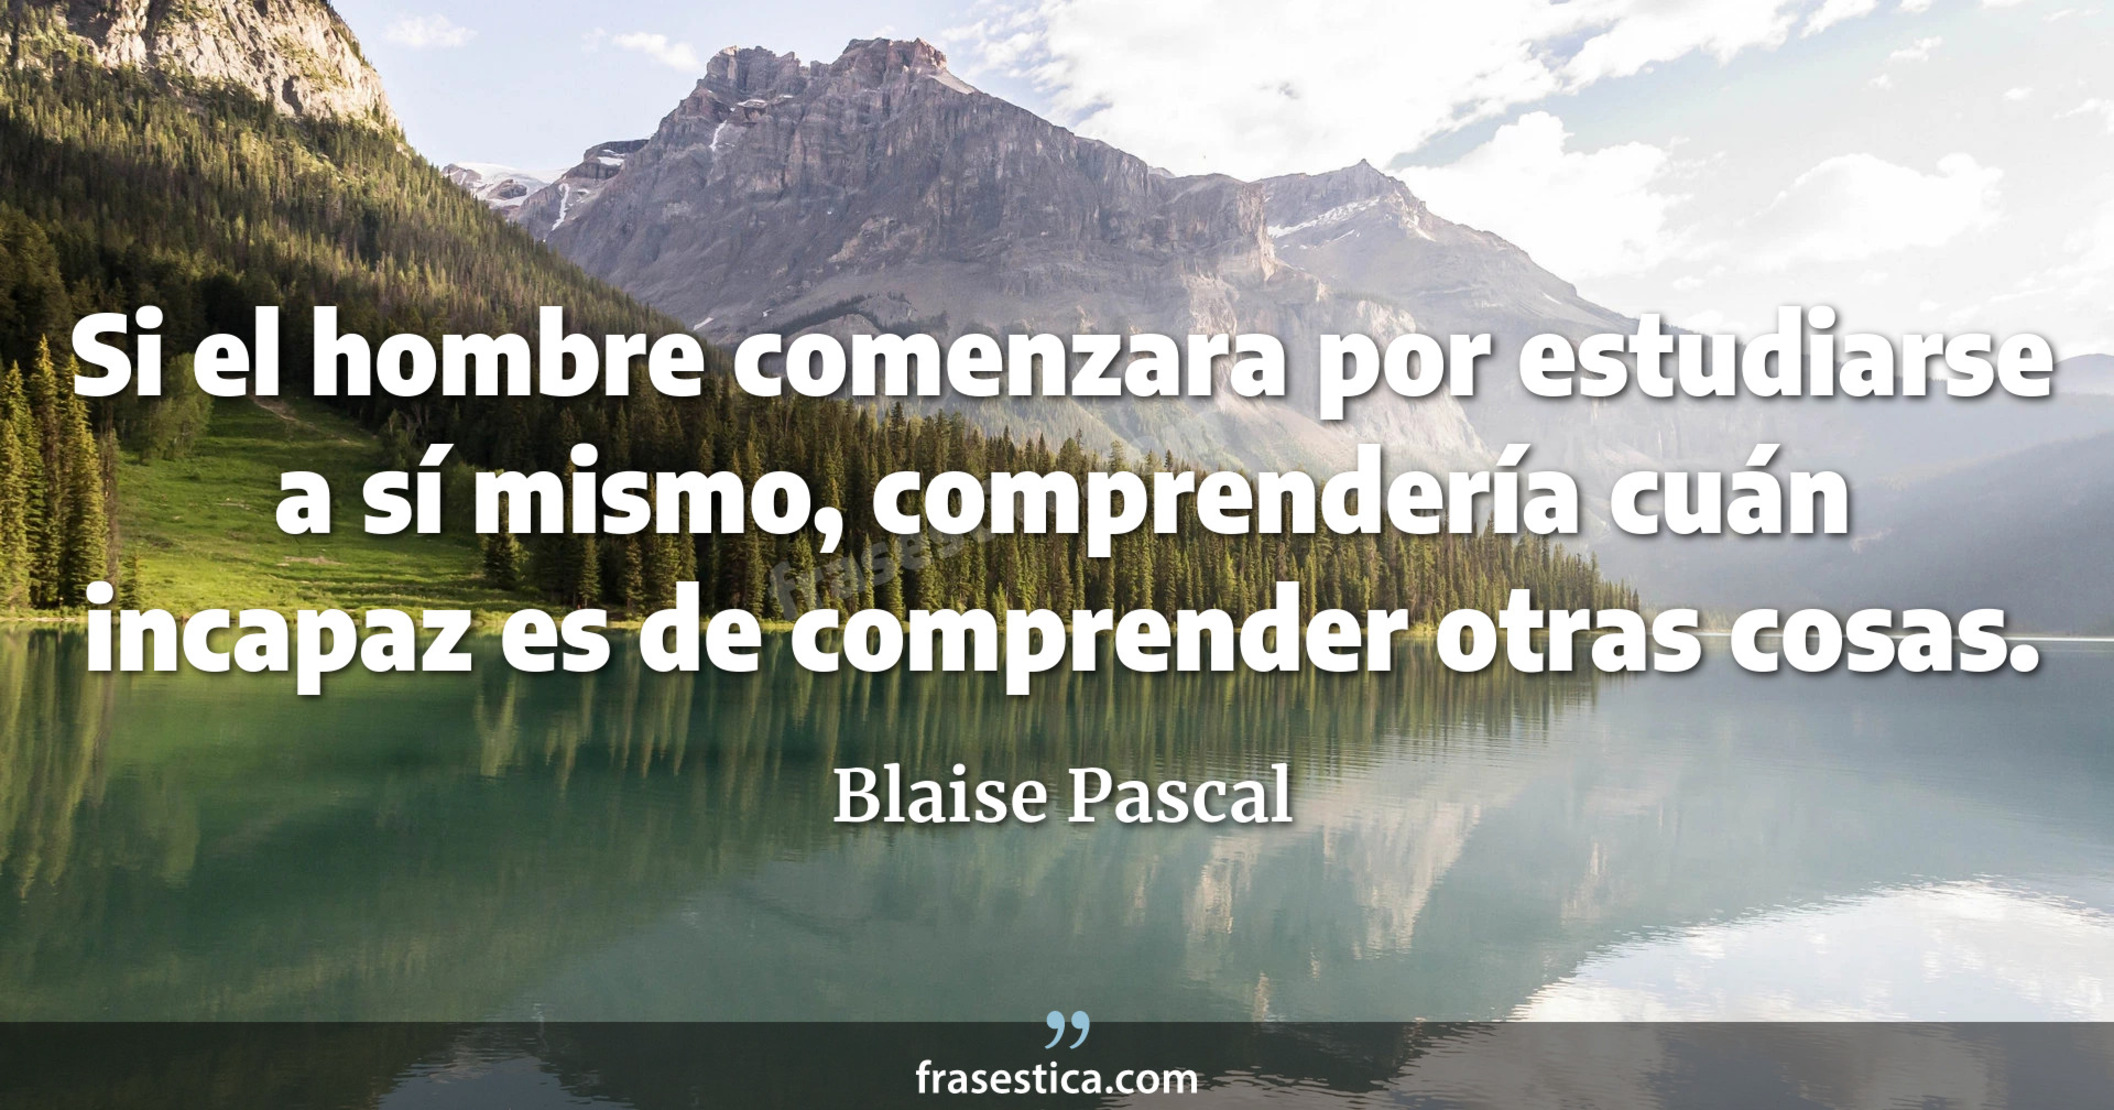 Si el hombre comenzara por estudiarse a sí mismo, comprendería cuán incapaz es de comprender otras cosas. - Blaise Pascal